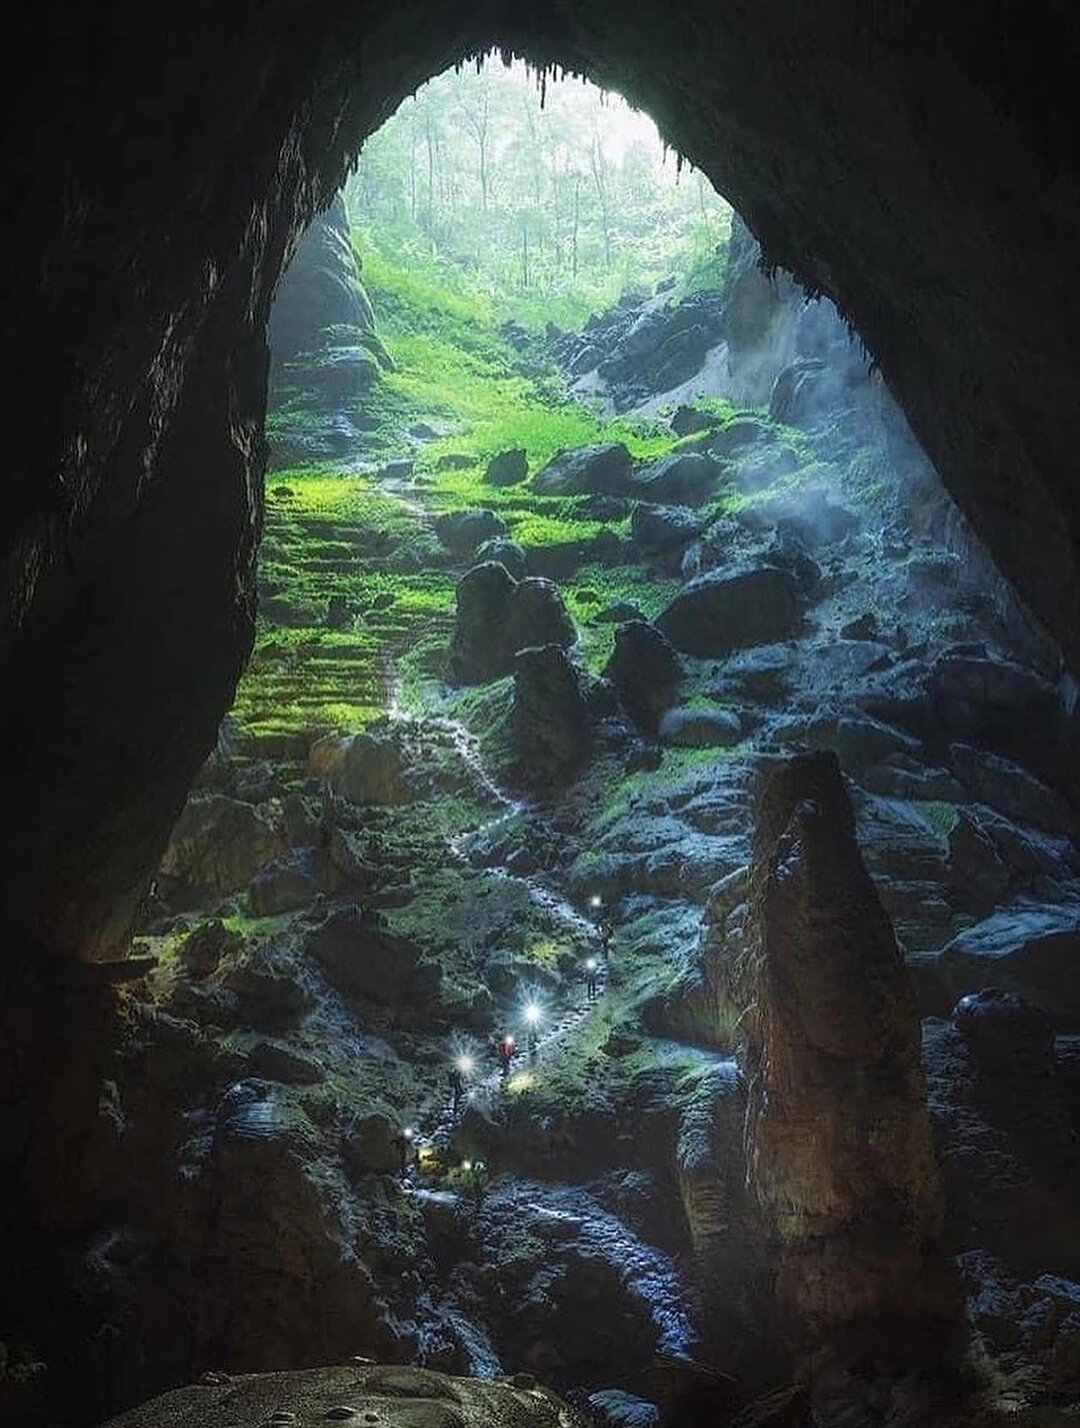 能容纳72亿人入场的全球最大洞穴韩松洞